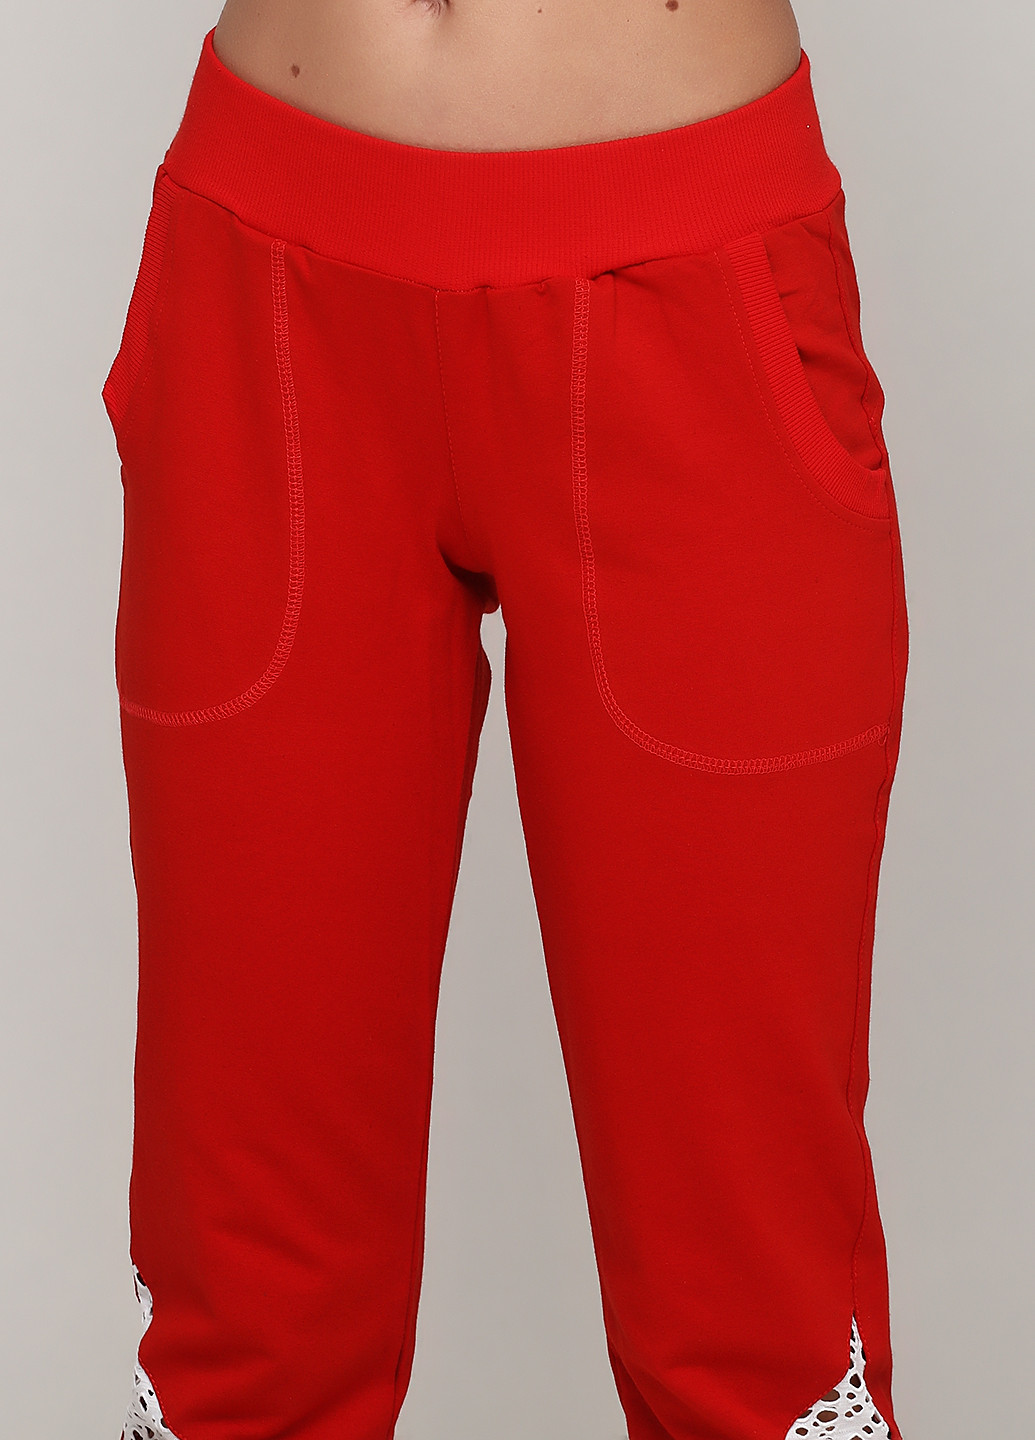 Костюм (футболка, брюки) Radda брючный рисунок красный спортивный хлопок, трикотаж